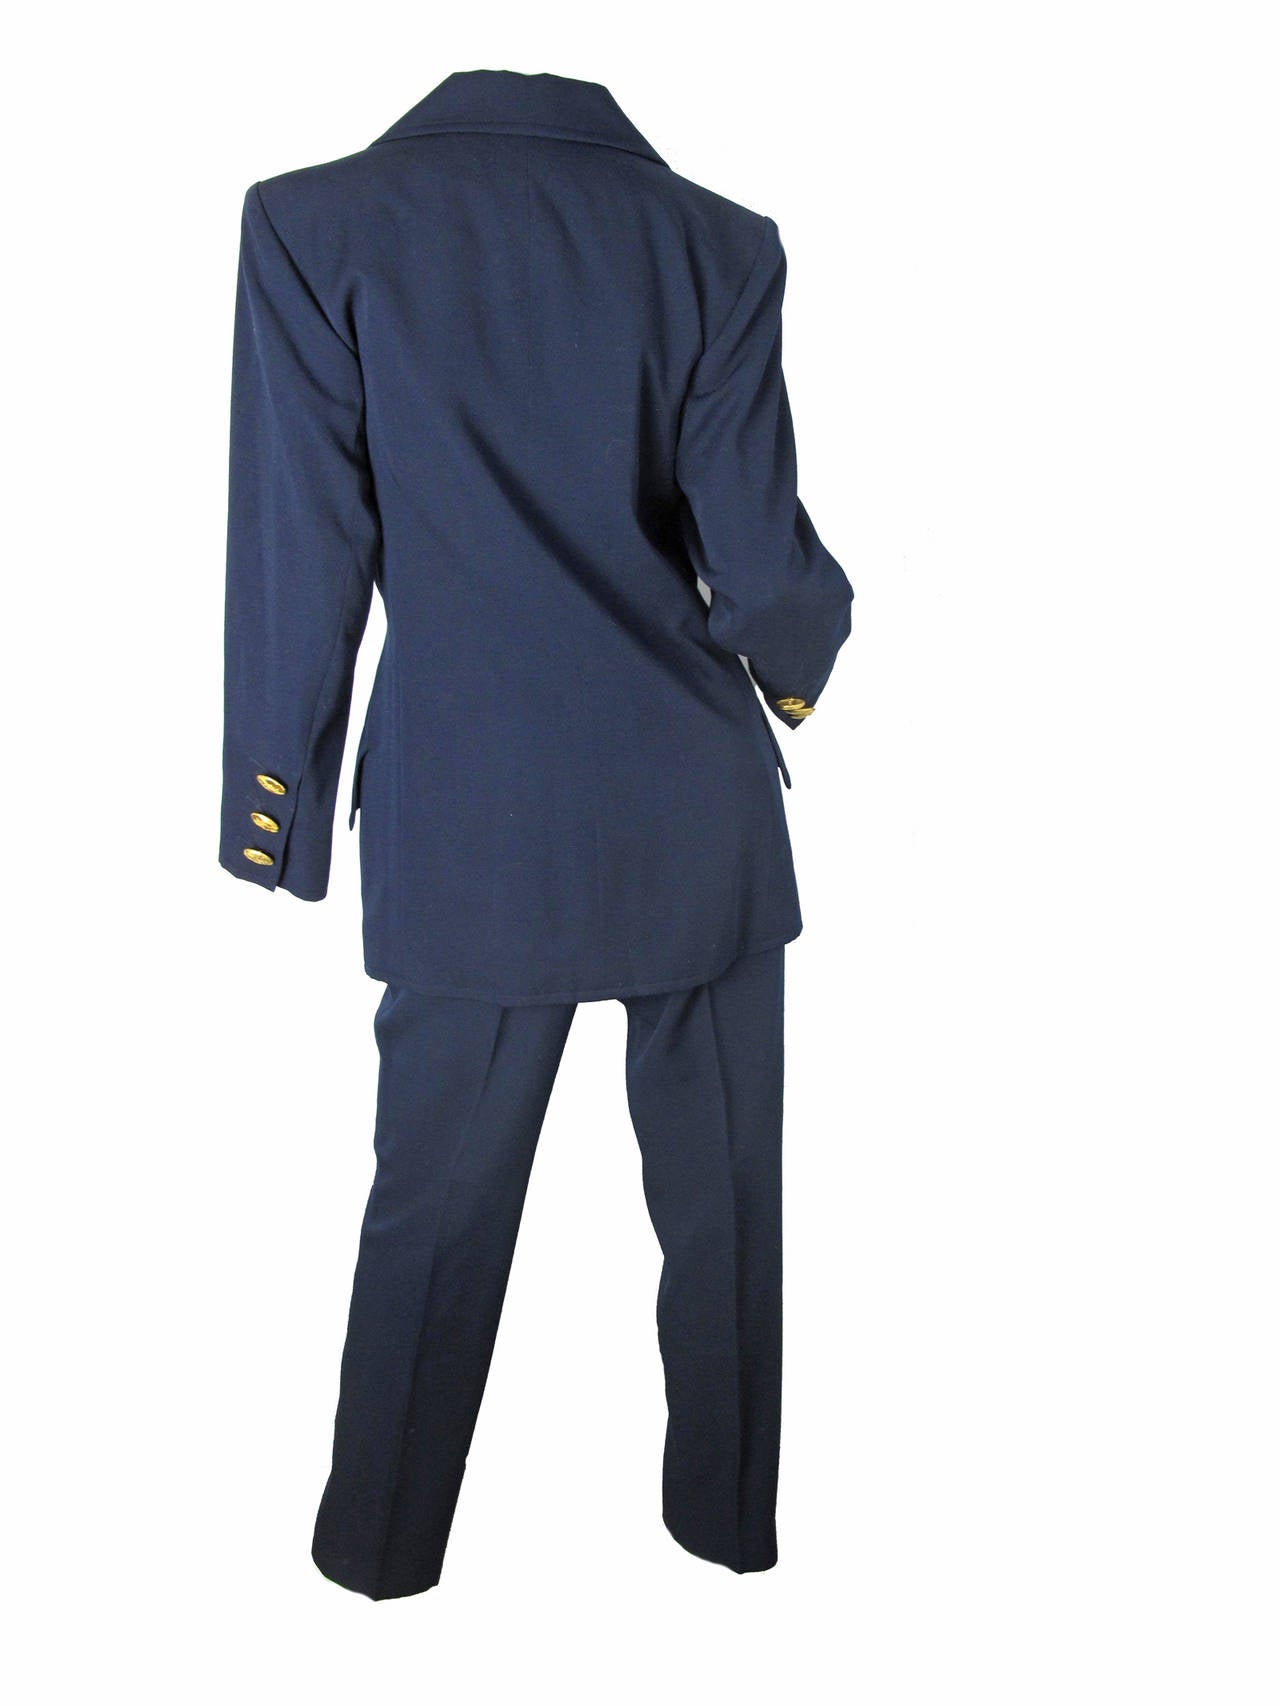 Black Yves Saint Laurent Rive Gauche Navy Suit